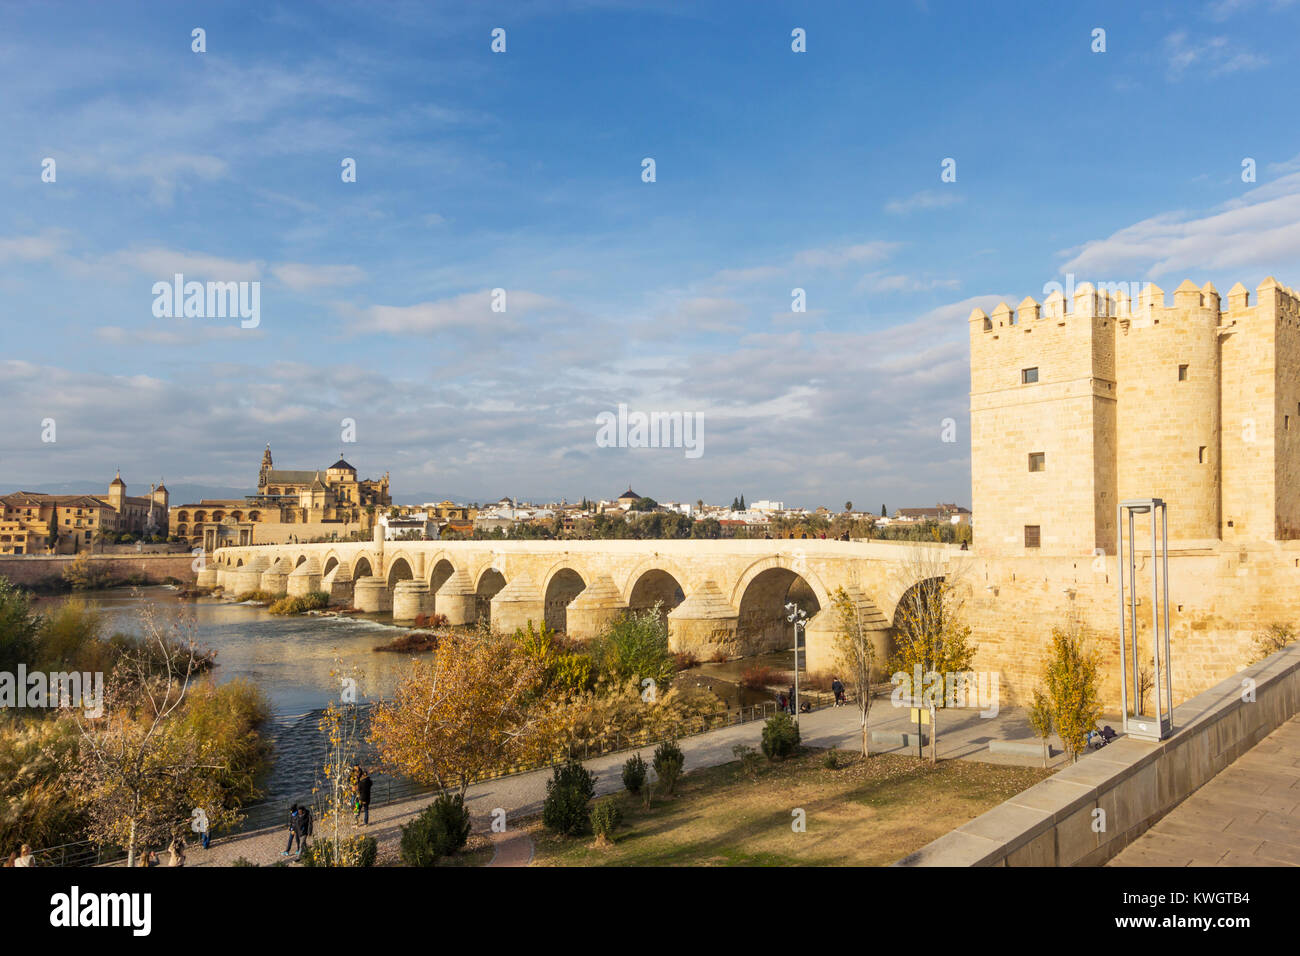 Cordoba, Andalusien, Spanien. Die römische Brücke über den Guadalquivir mit dem Calahorra Turm, die Moschee - Kathedrale von Córdoba Stockfoto